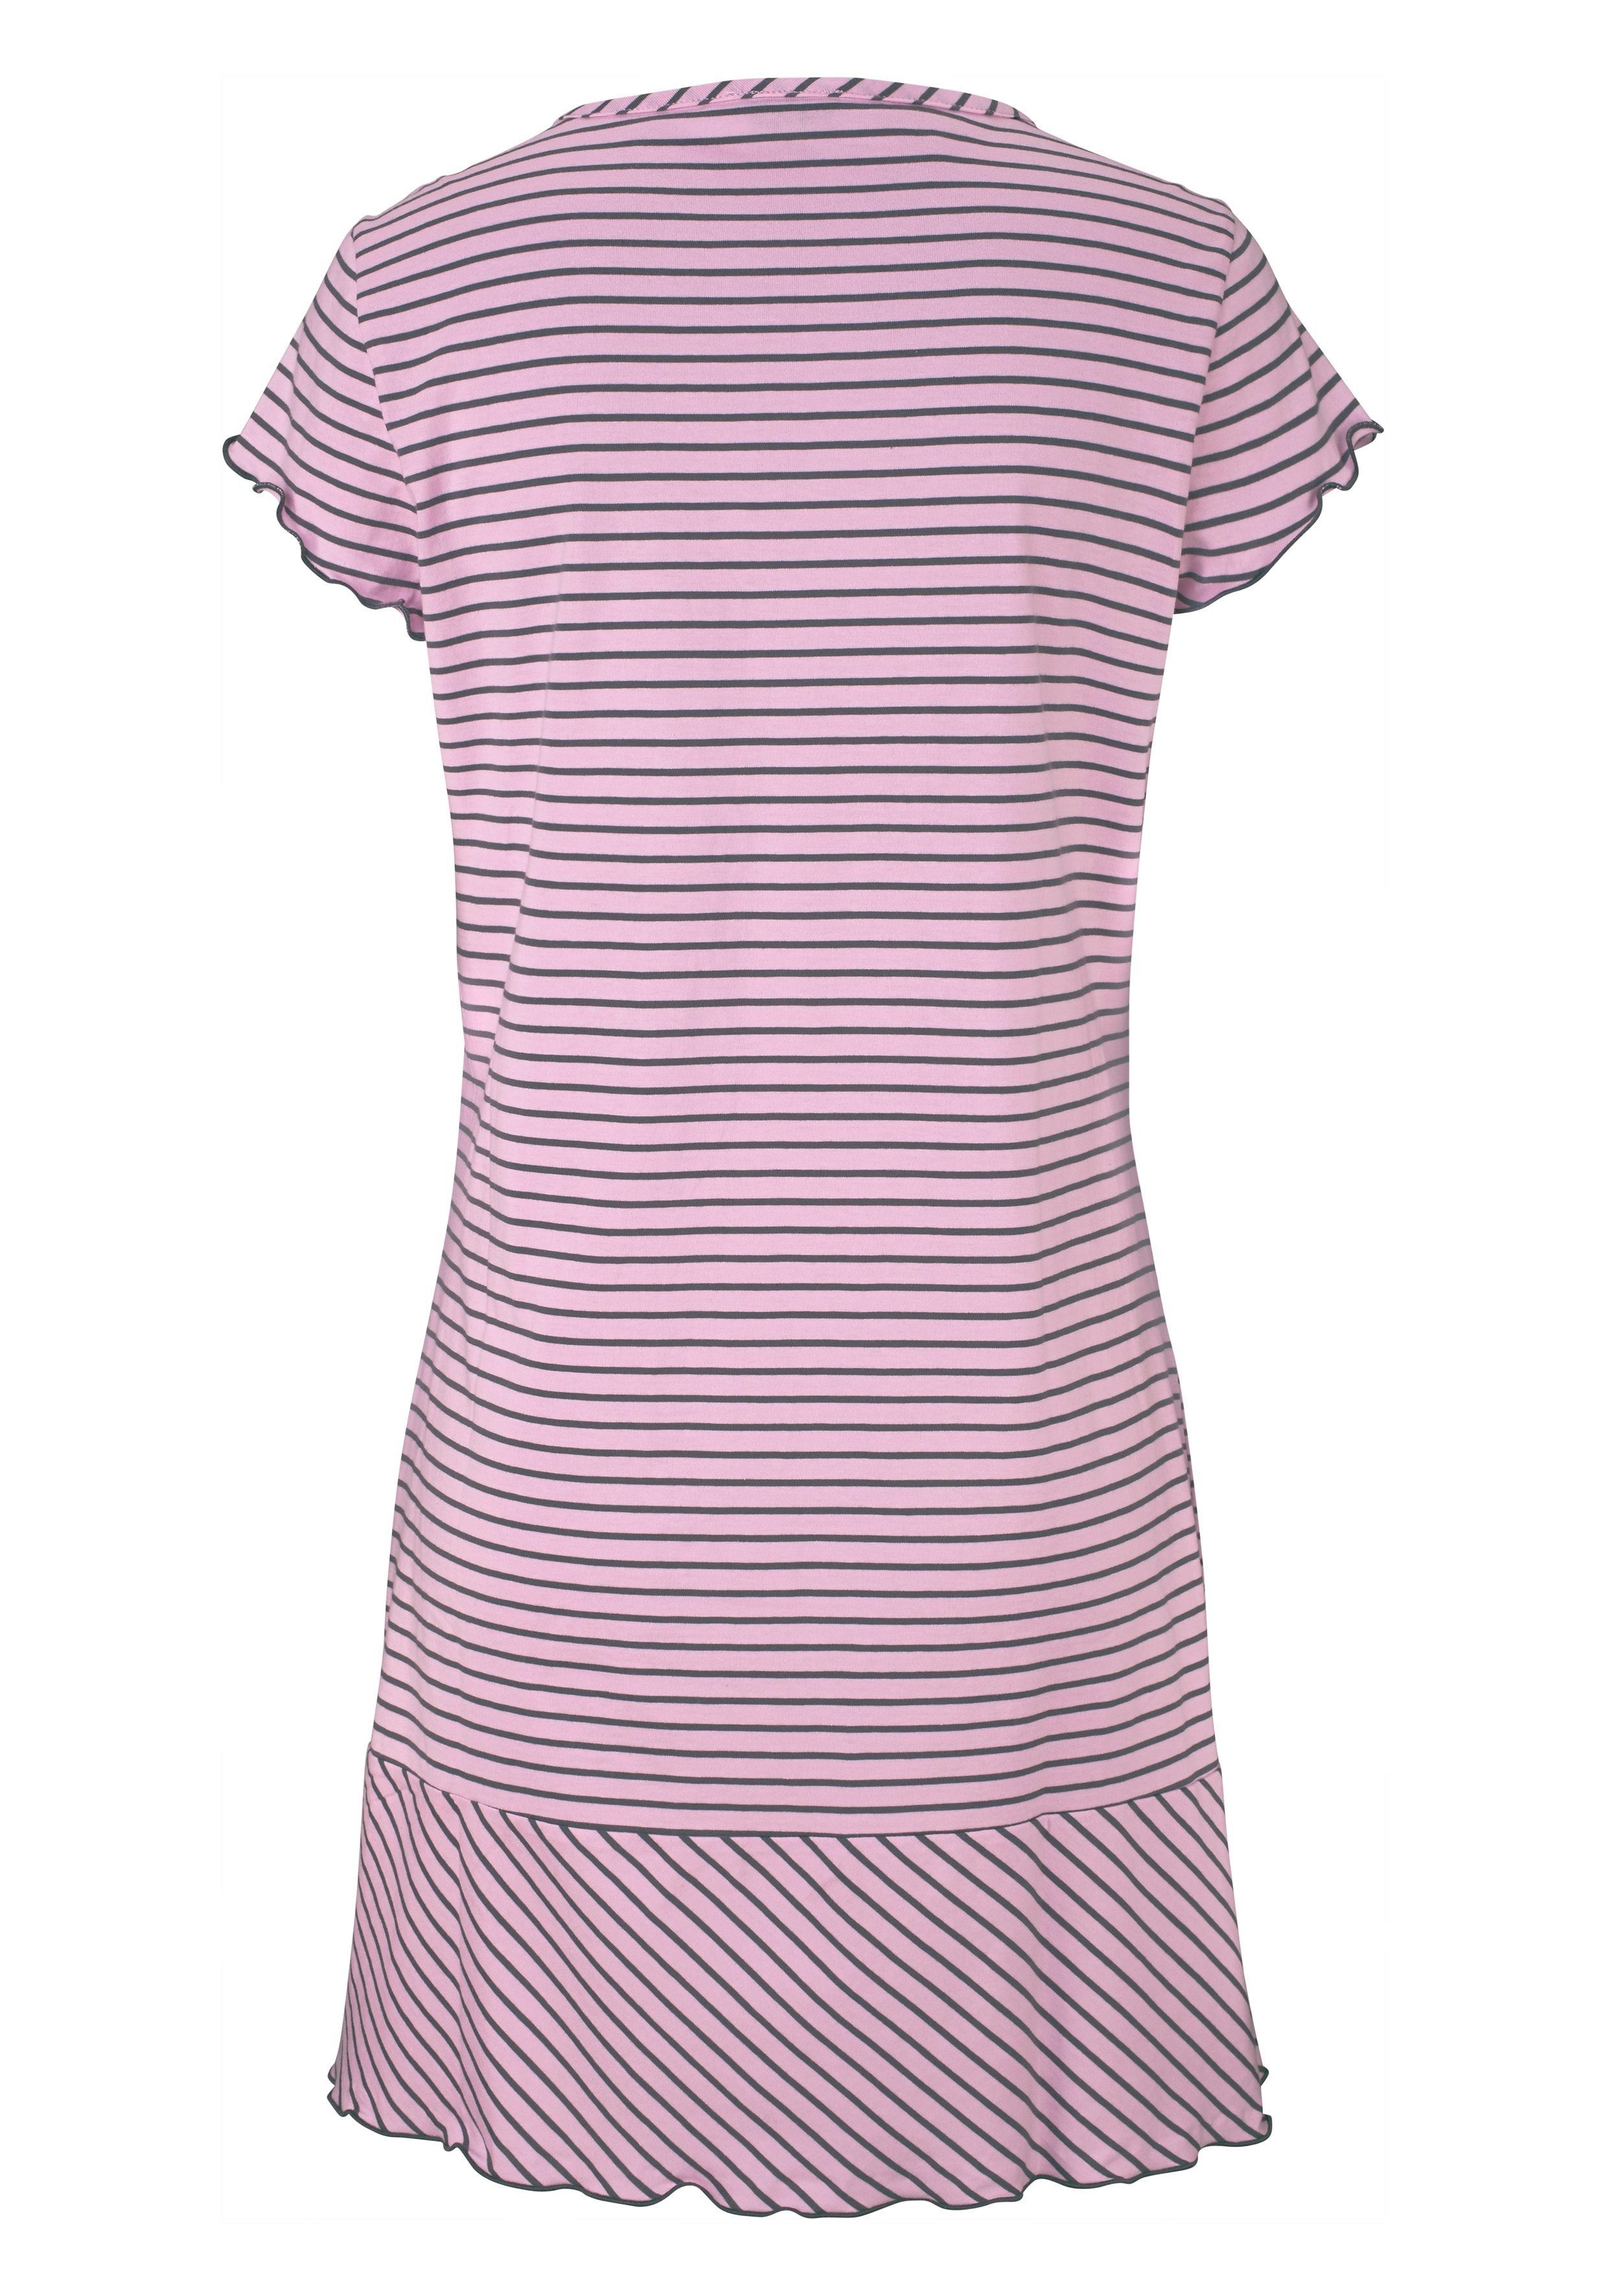 H.I.S Nachthemd in süßem Streifenlook mit rosa-geringelt Kräuselrändern